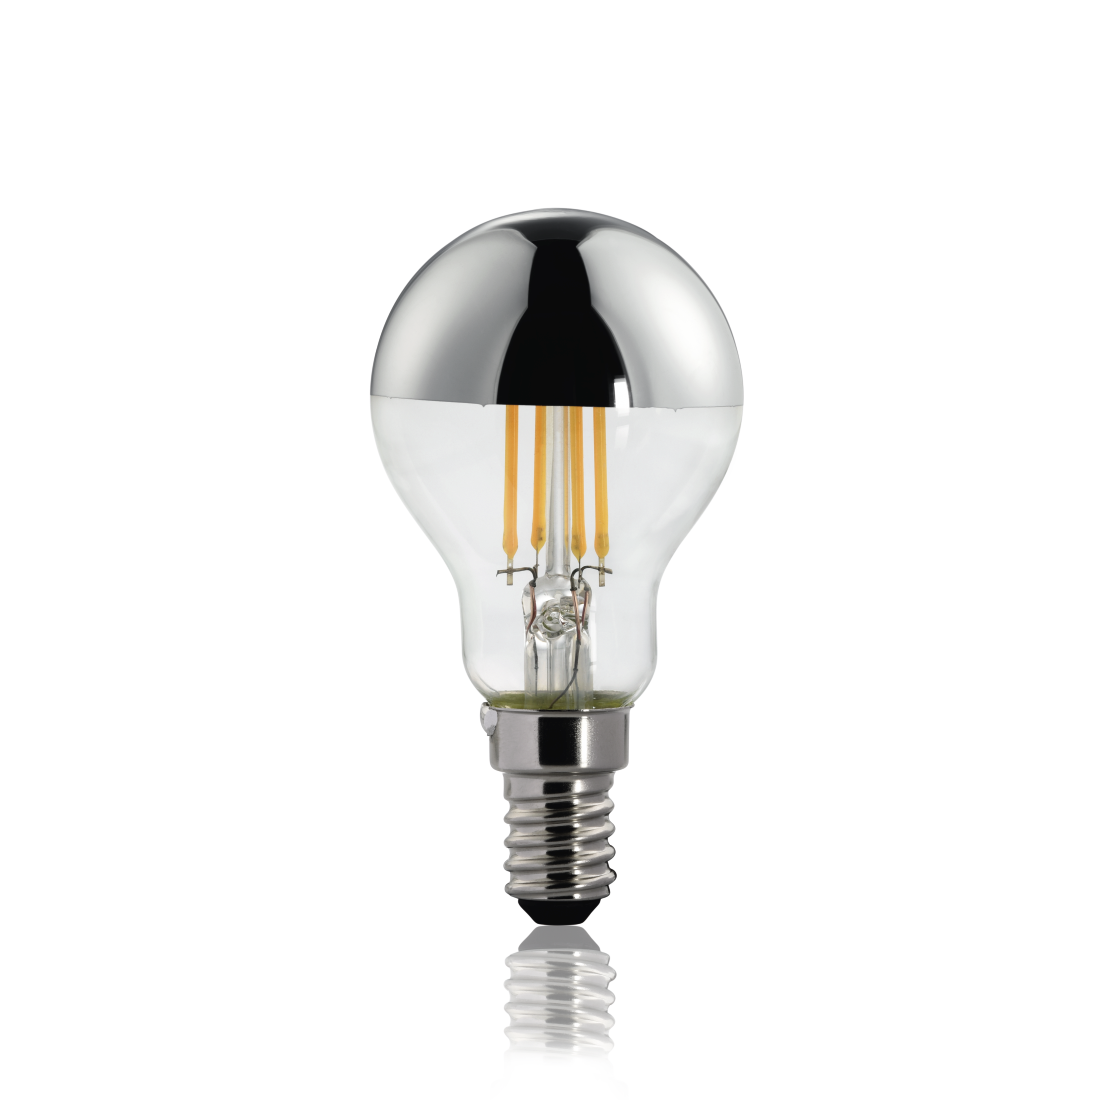 abx2 High-Res Image 2 - Xavax, Ampoule filament à LED, E14, 400lm rempl. amp. sphérique 35W, blc chd